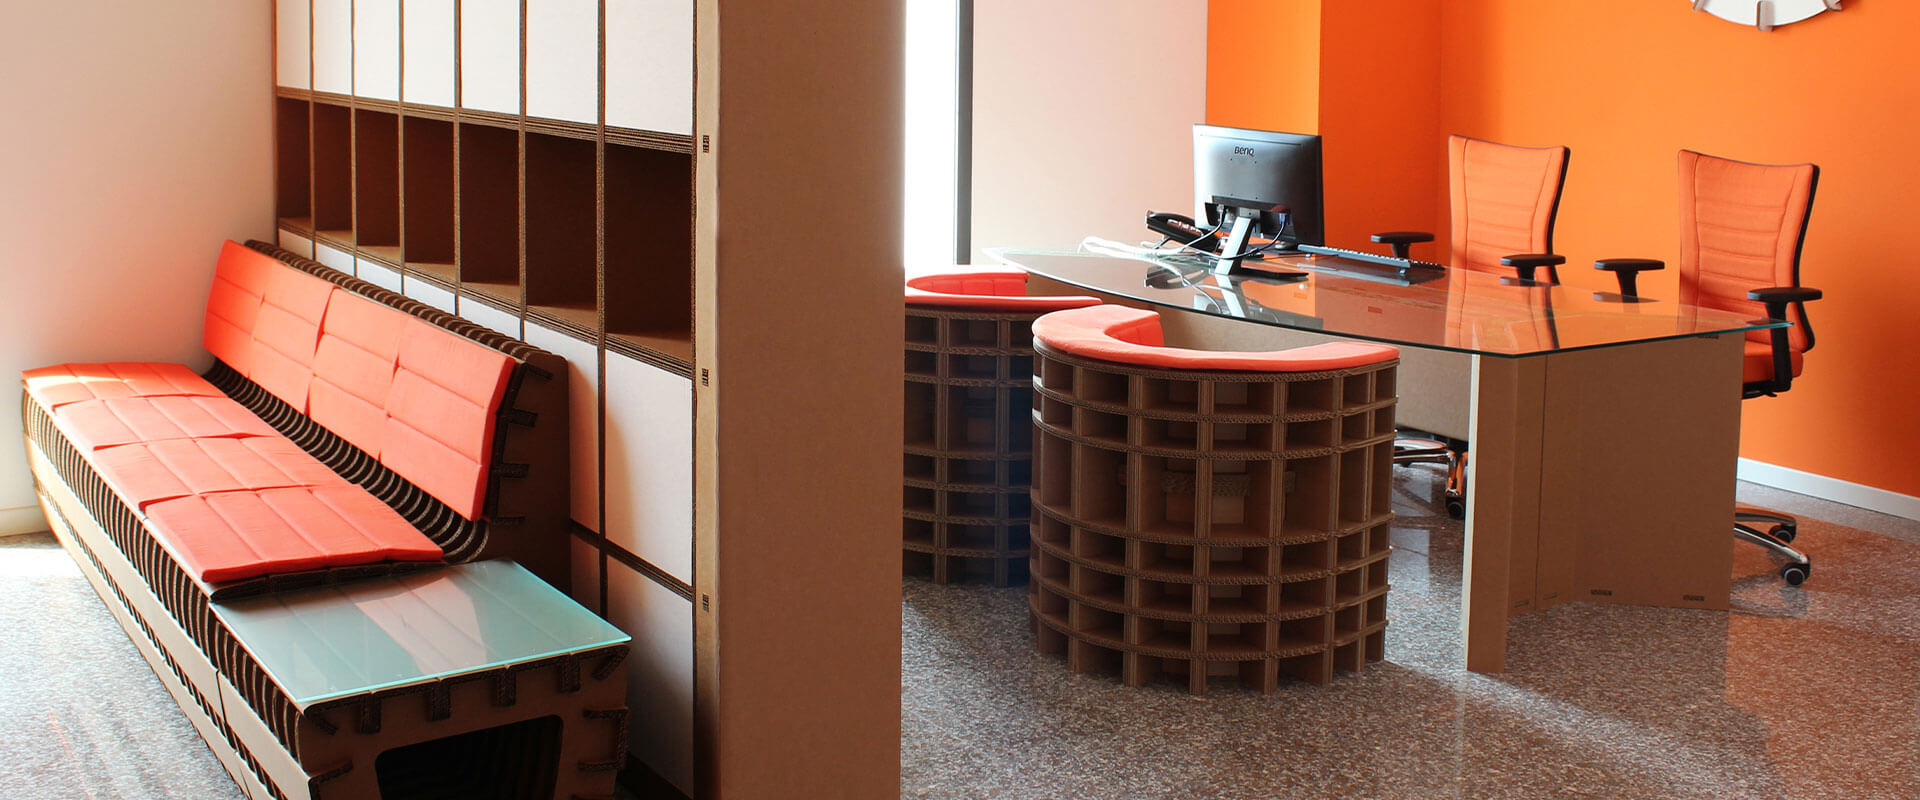 Bureau pour travailler debout, un meuble esthétique, écologique et plus  productif ⋆ OpenWood.